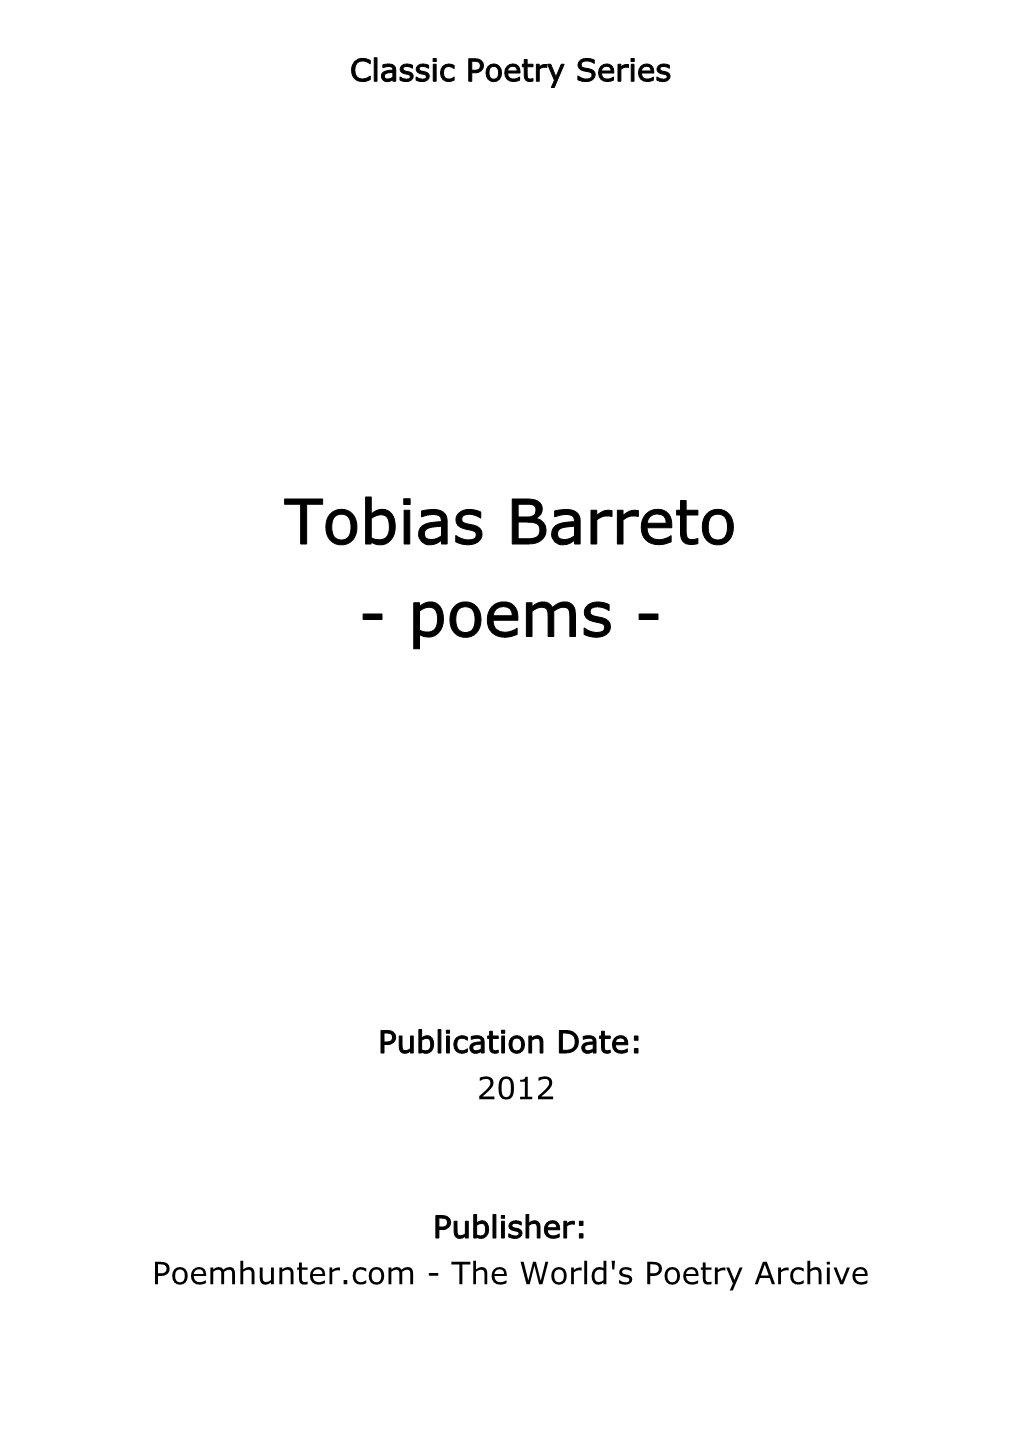 Tobias Barreto - Poems